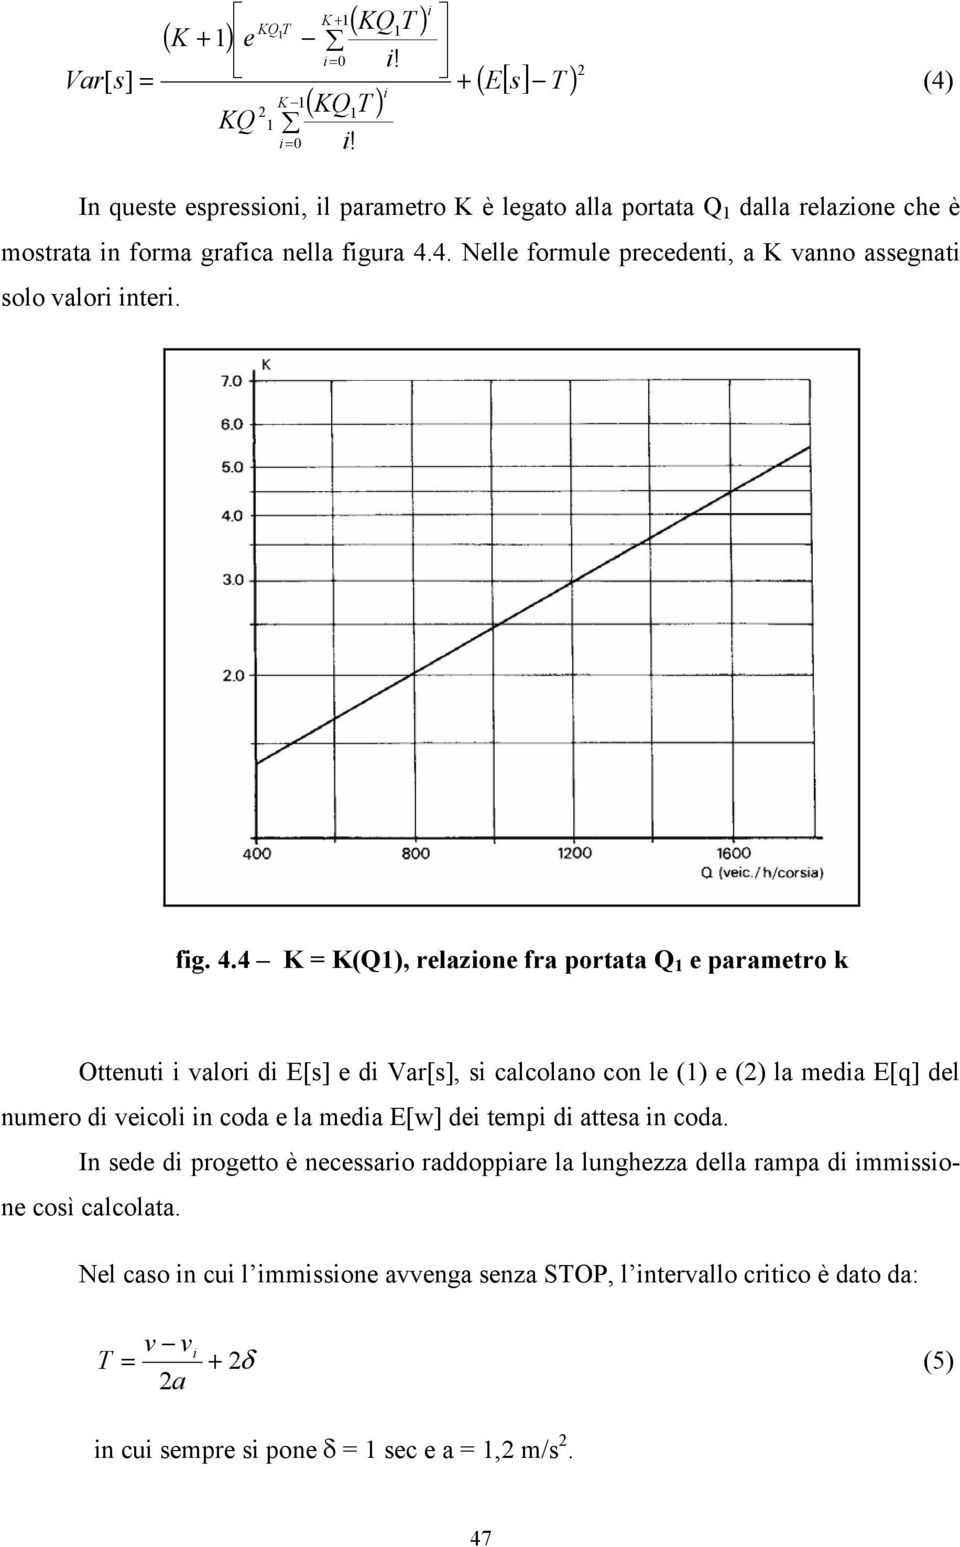 4 K = K(Q1), relazione fra portata Q 1 e parametro k Ottenuti i valori di E[s] e di Var[s], si calcolano con le (1) e (2) la media E[q] del numero di veicoli in coda e la media E[w] dei tempi